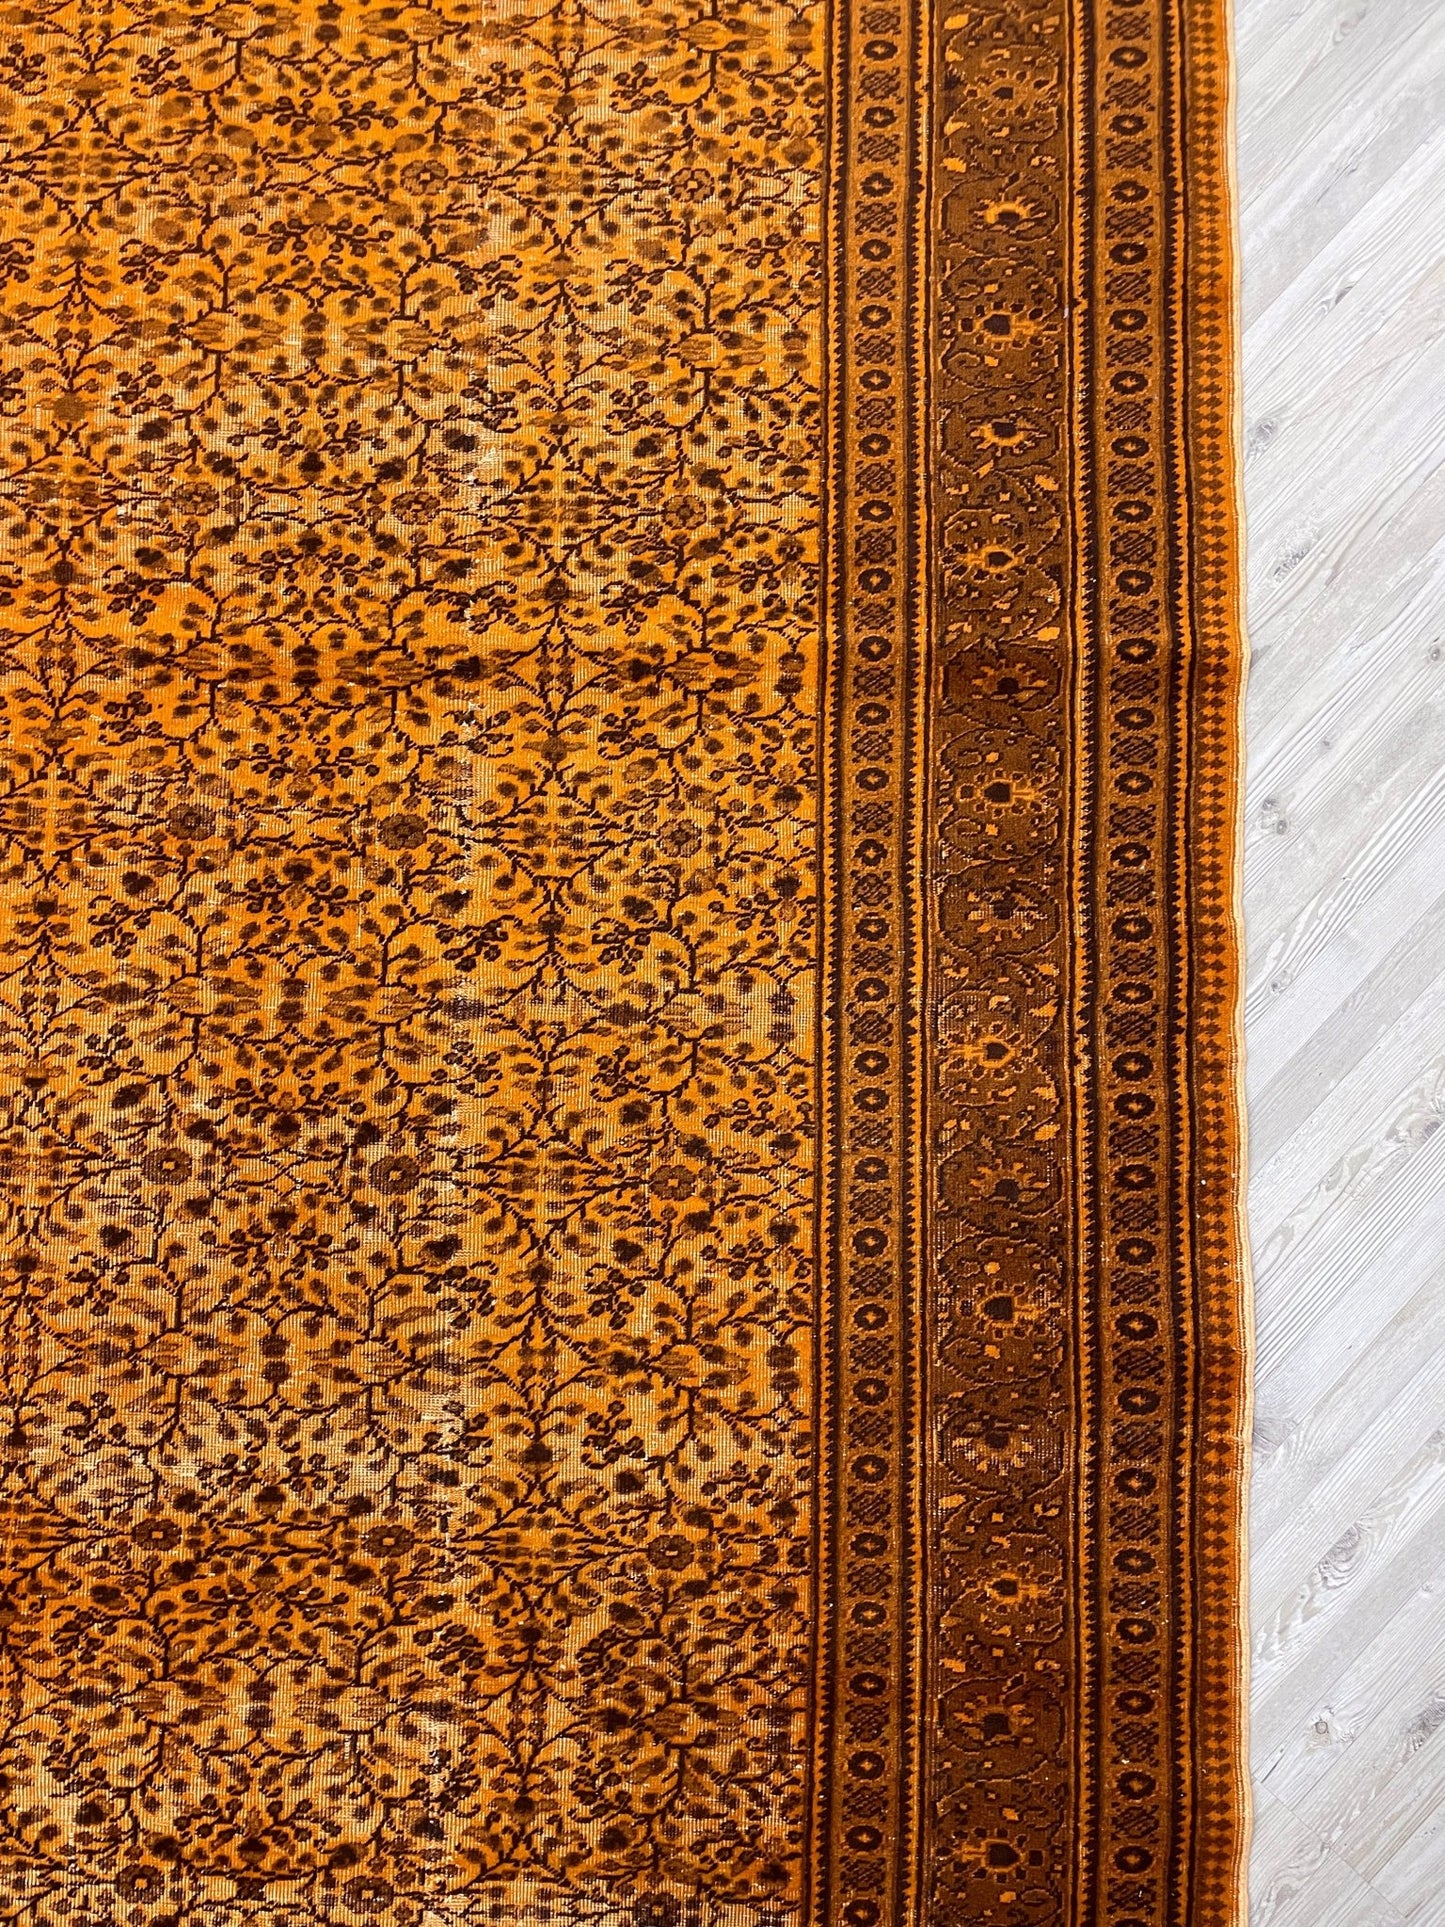 orange vintage rug shop rug san francisco bay area palo alto berkeley east bay online 